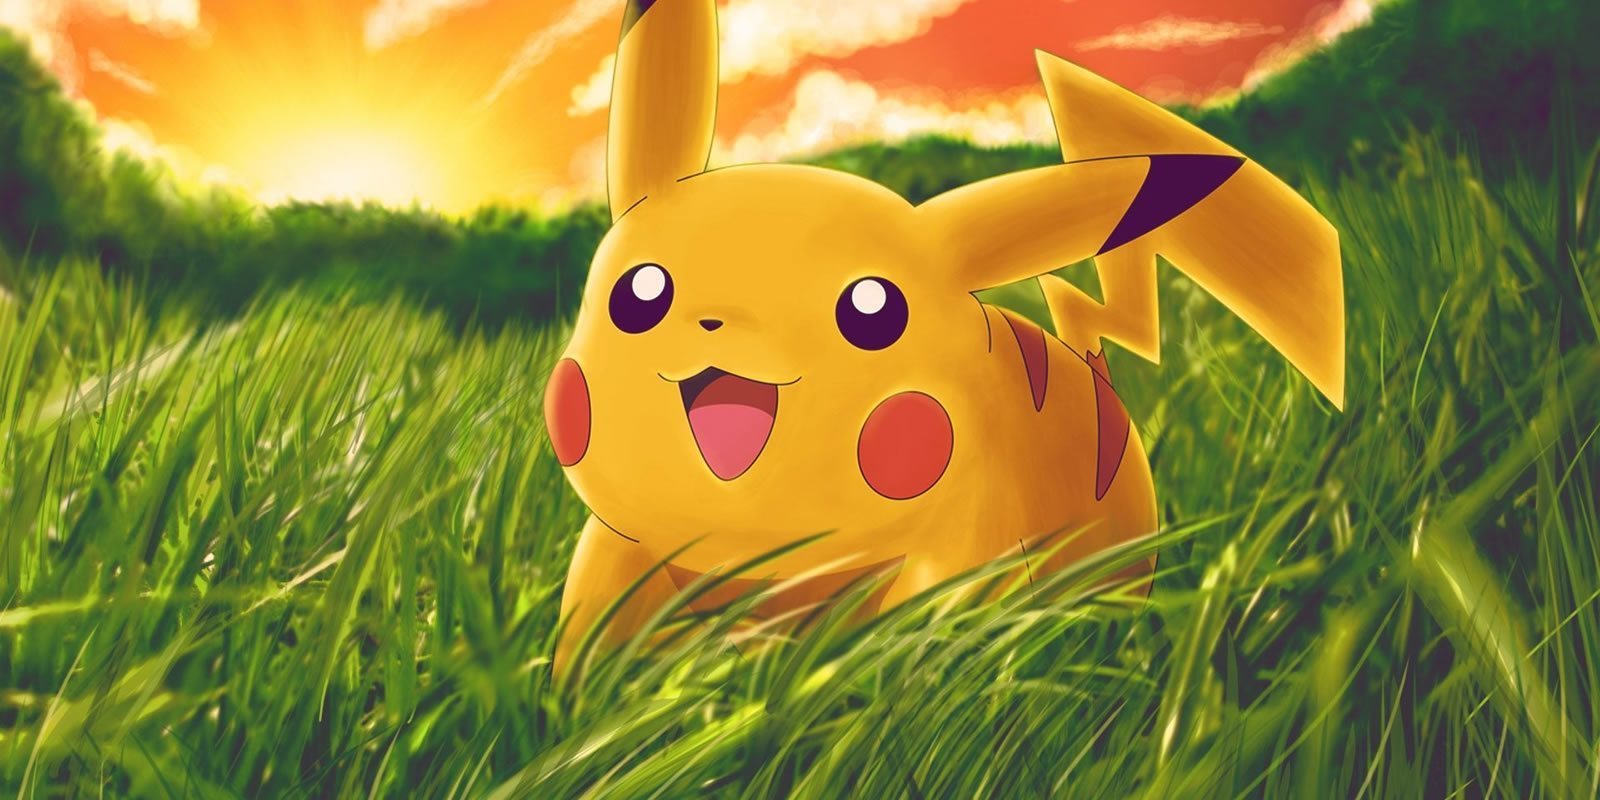 El nuevo modo de 'Pokémon GO' ya tiene nombre: Buddy Adventure